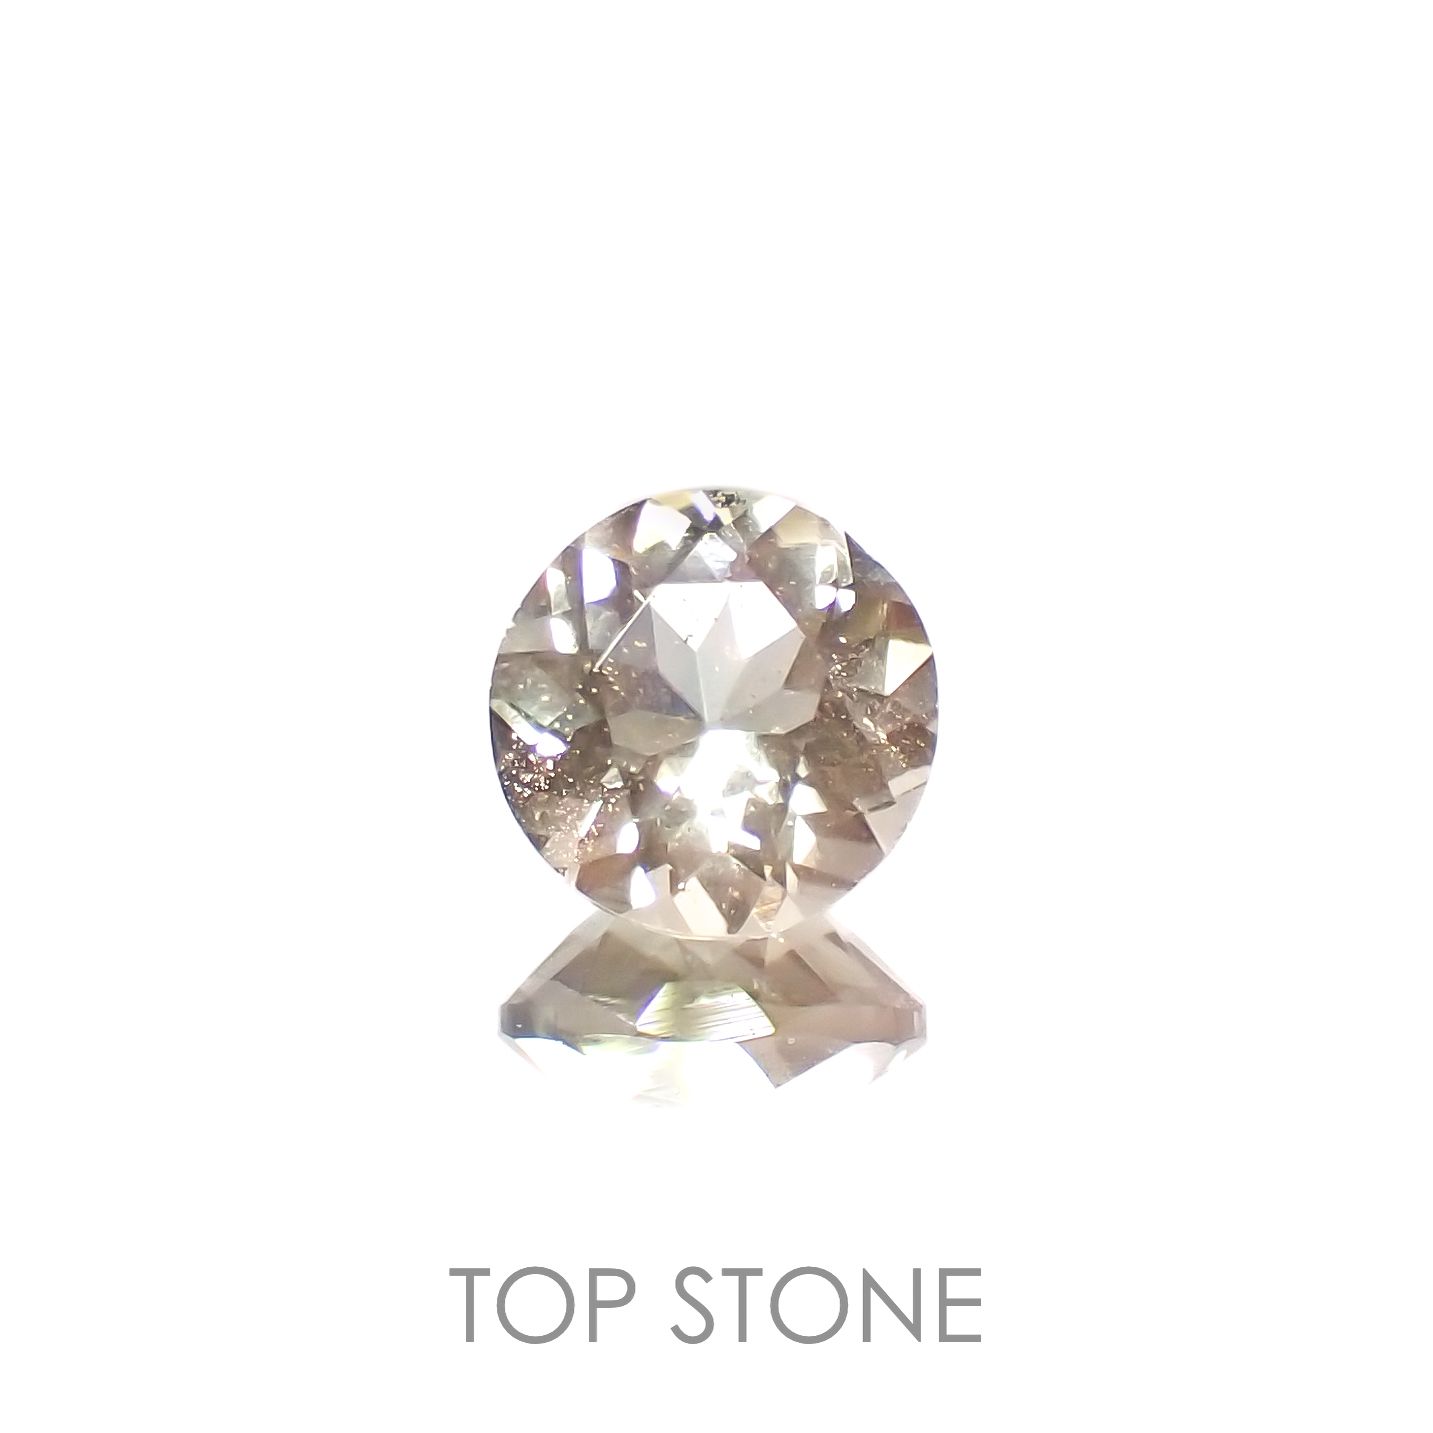 宝石名から探す / オレゴンサンストーン 通販 | TOP STONE(トップストーン)